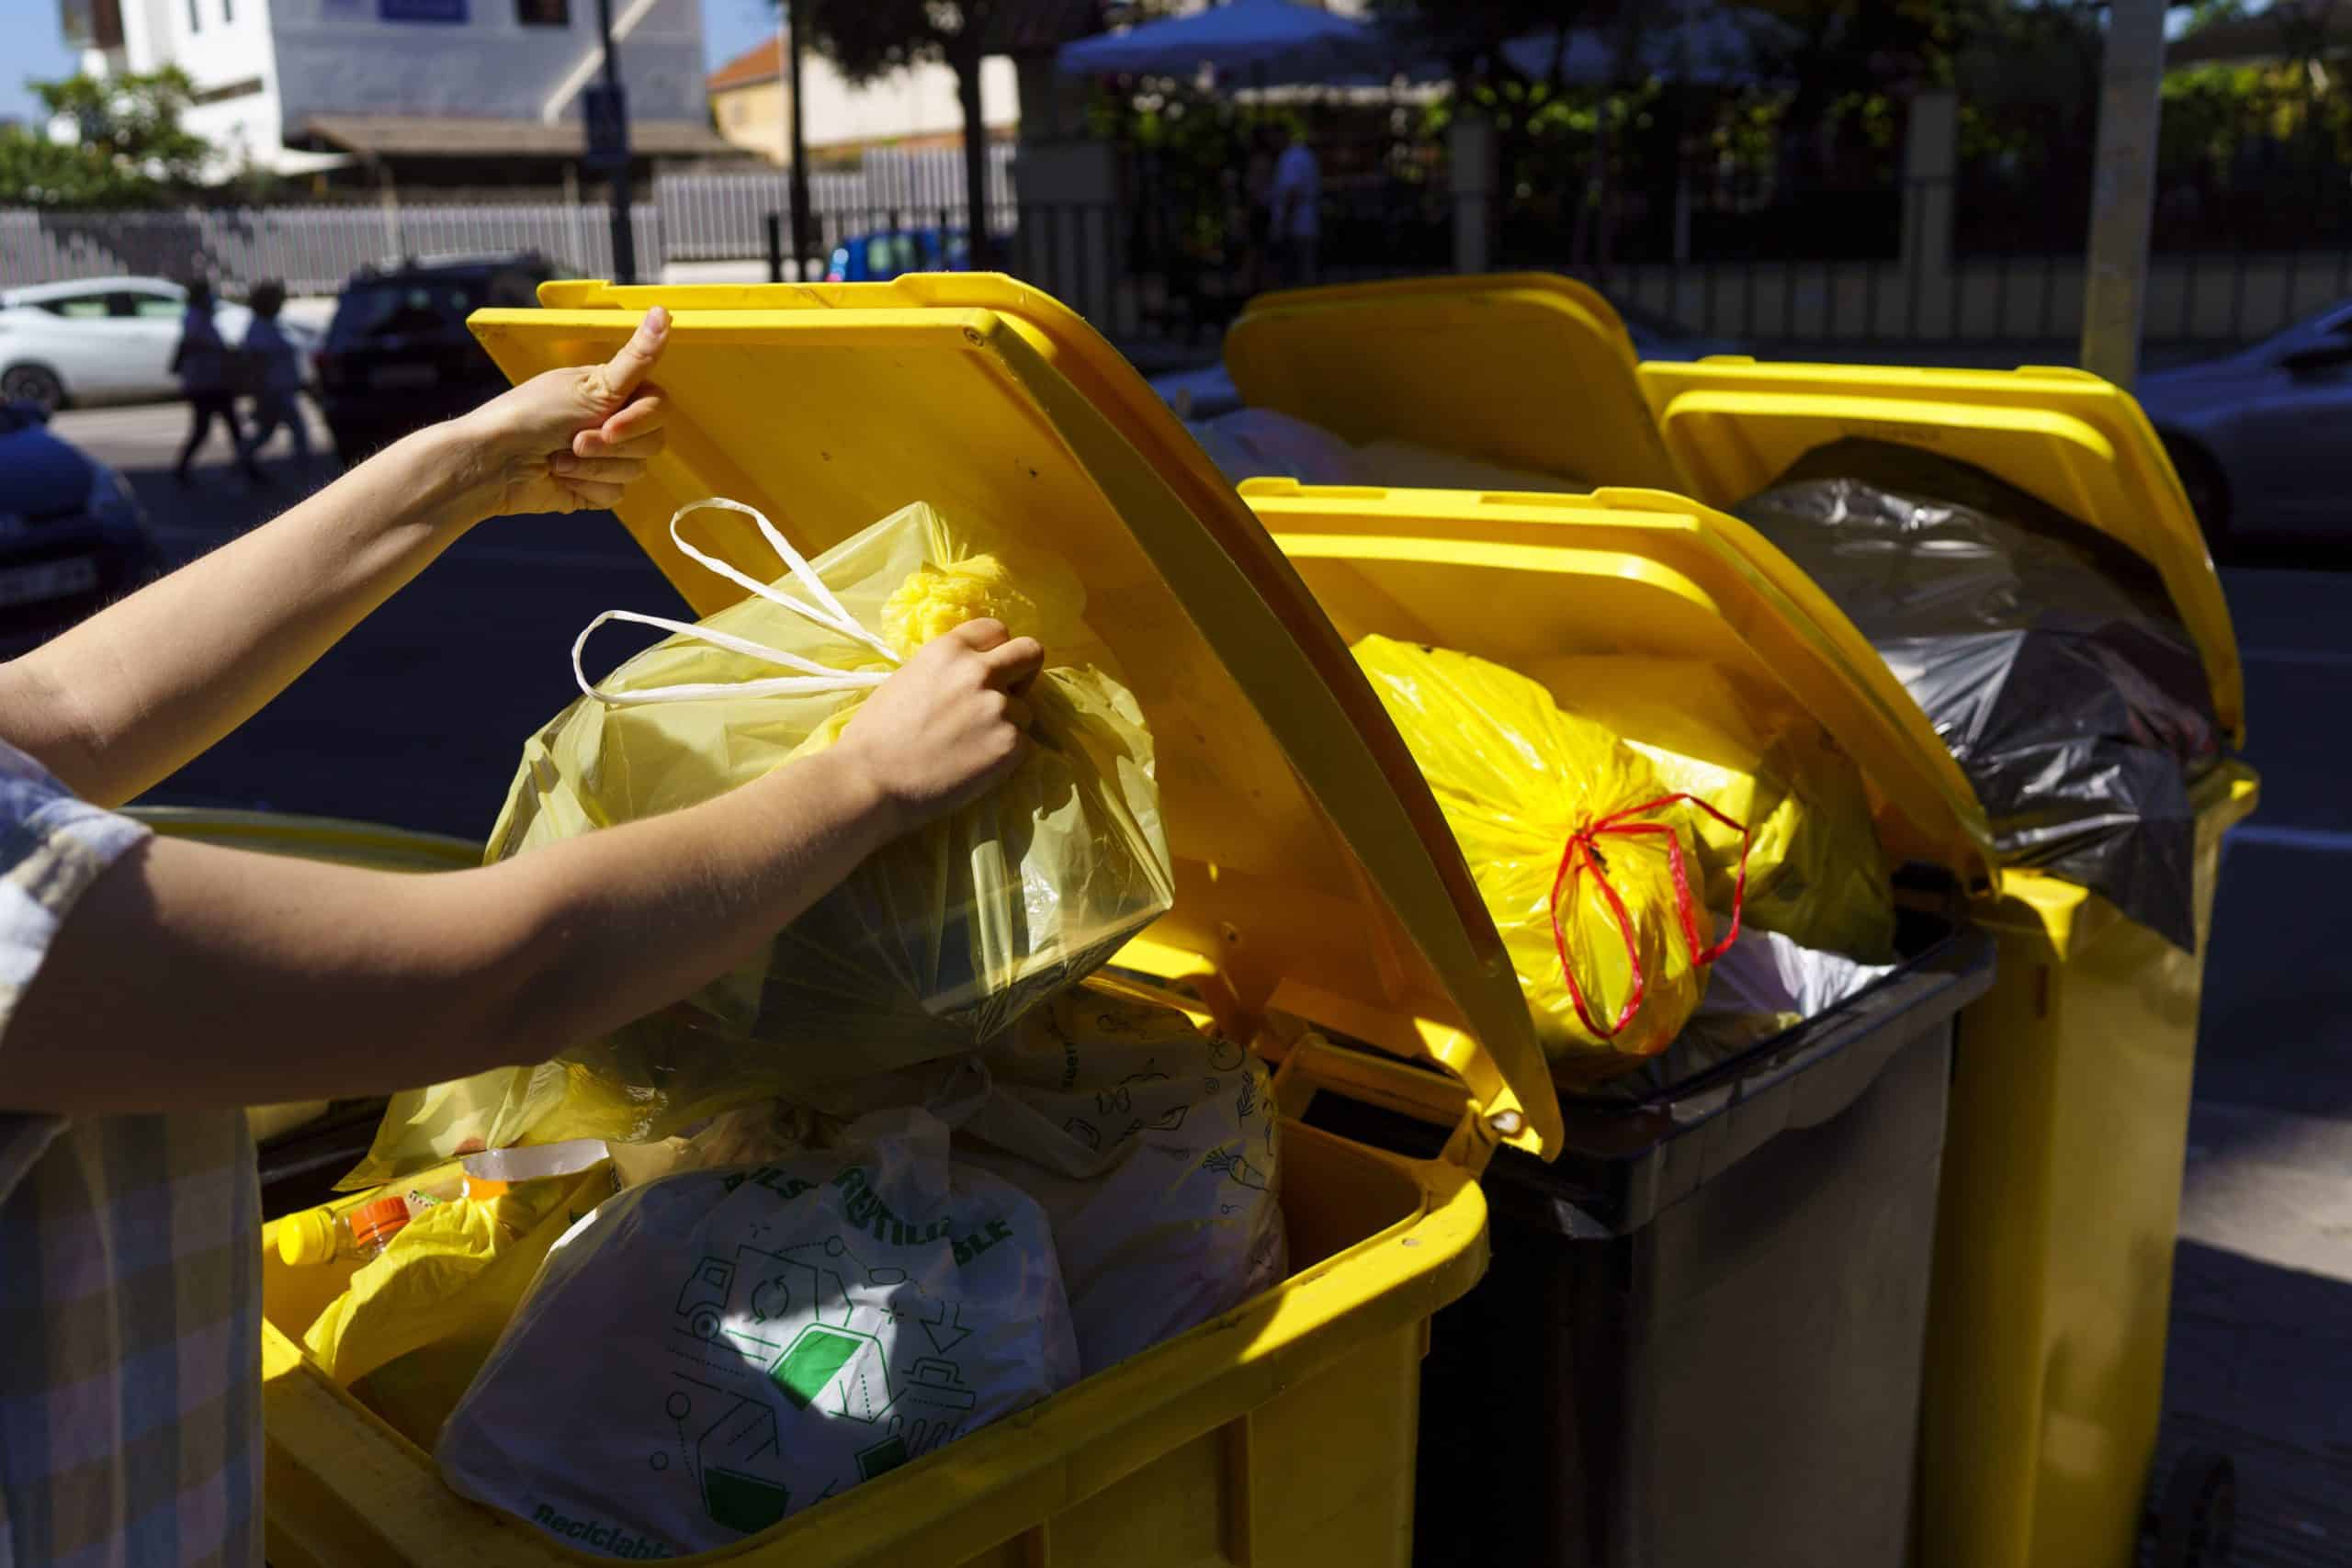 el confinamiento impulso el reciclaje en espana mas de 25 millones de personas adoptan nuevas practicas sostenibles scaled